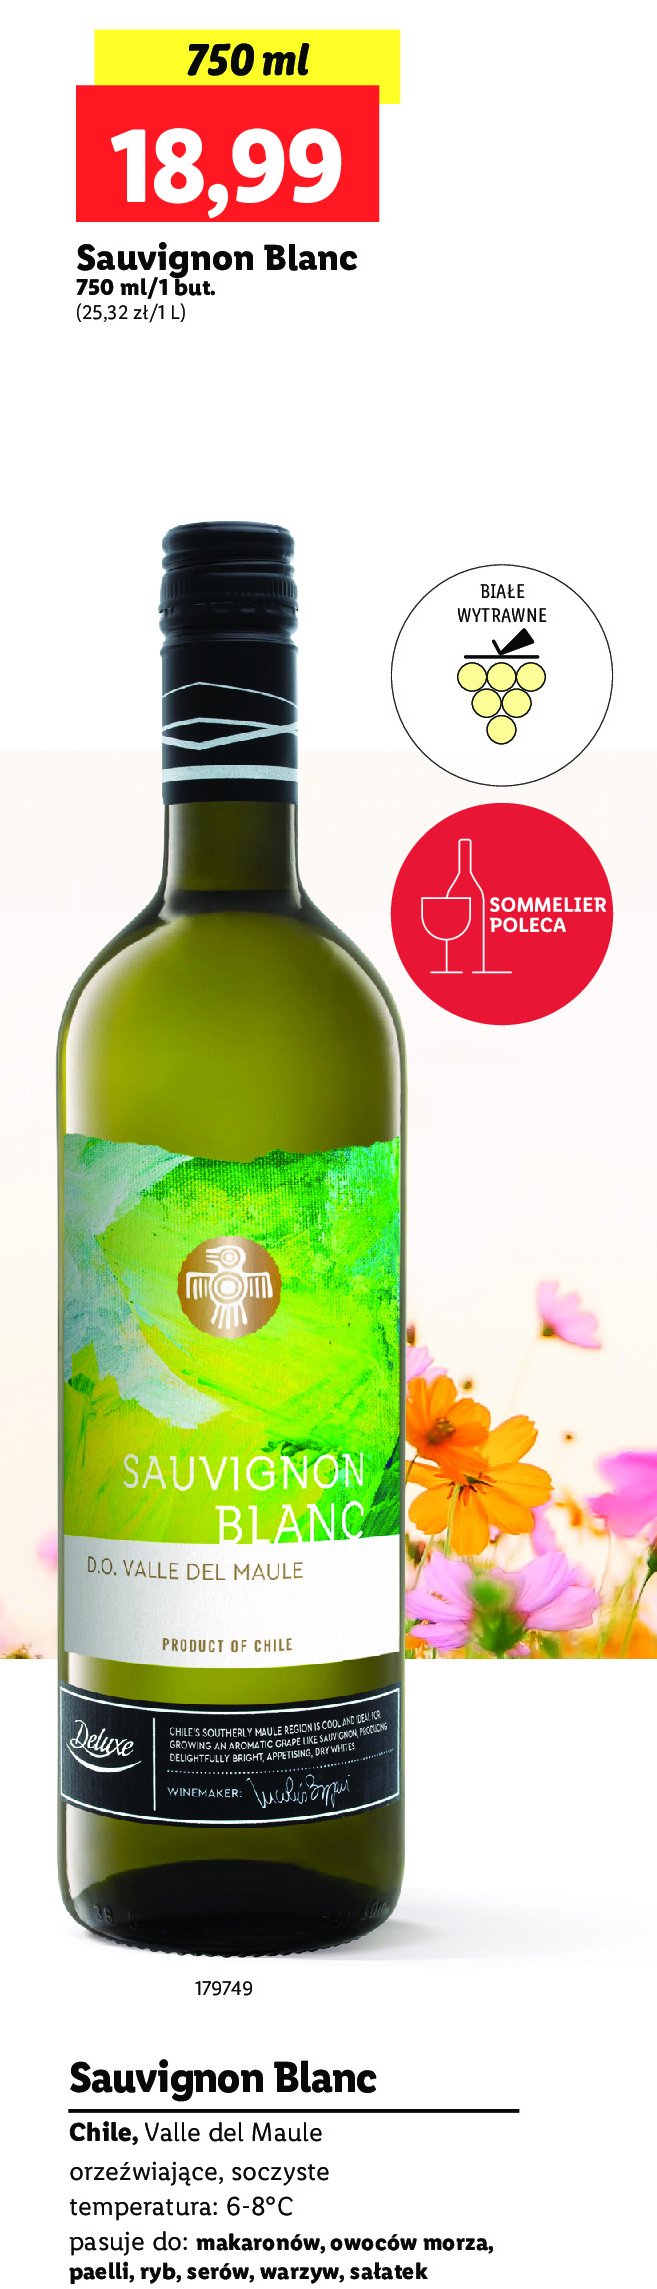 Wina Deluxe sauvignon blanc reserva privada promocja